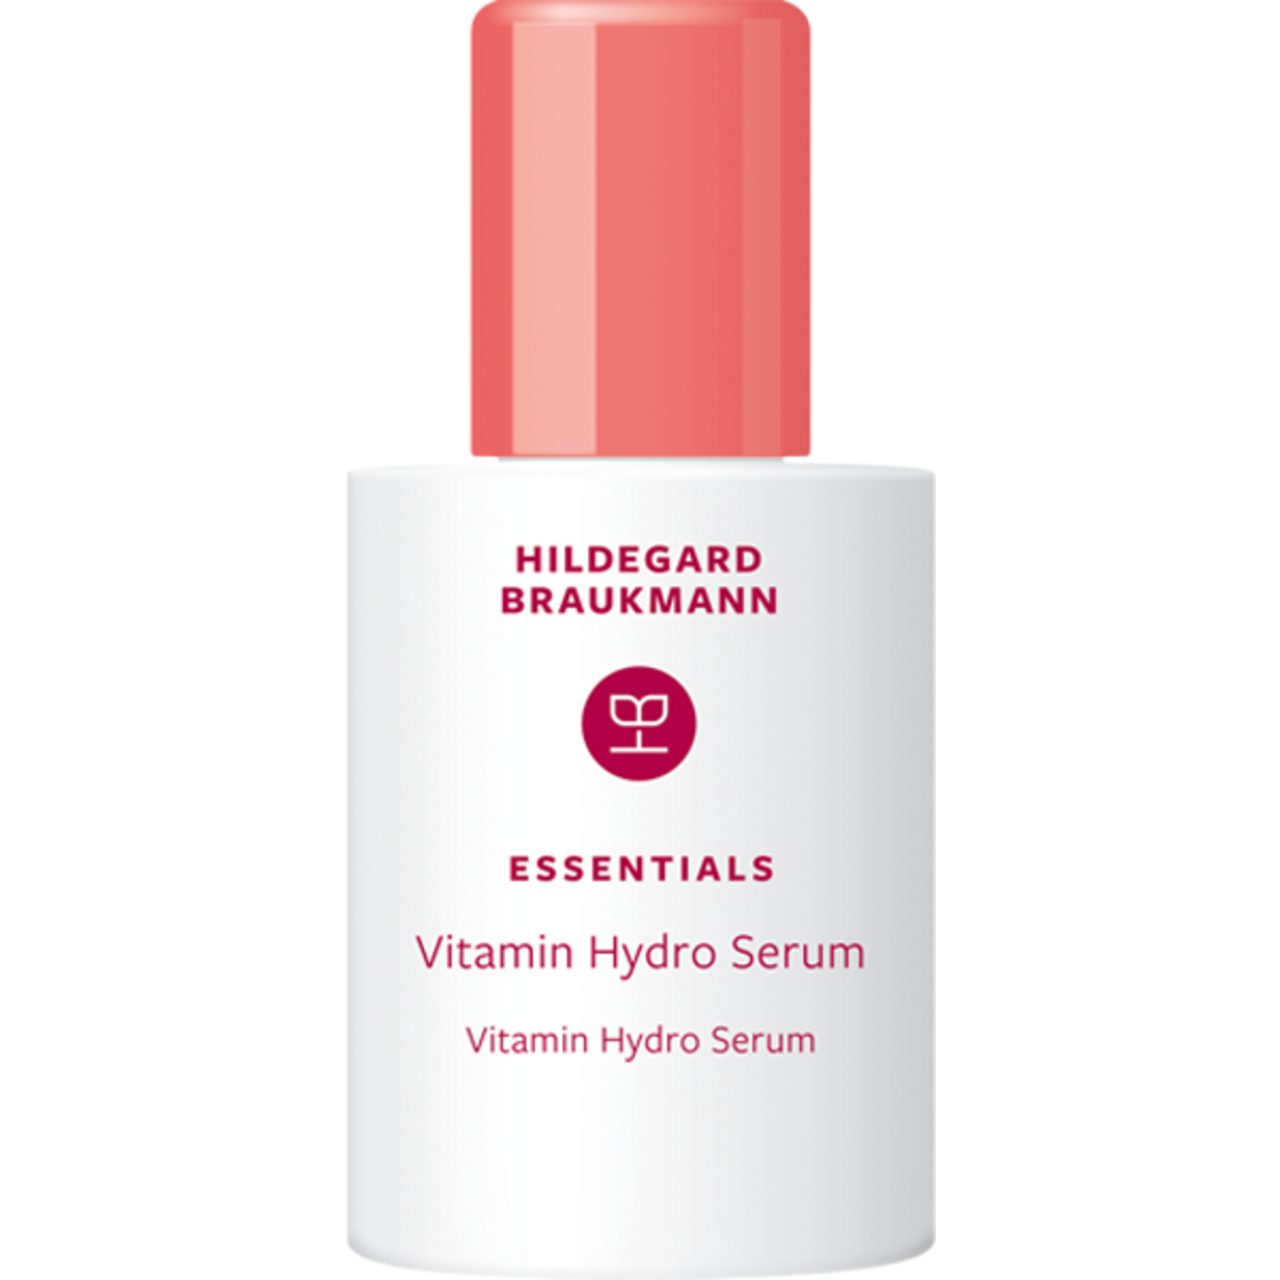 Hildegard Braukmann Gesichtsserum Essentials Vitamin Hydro Serum